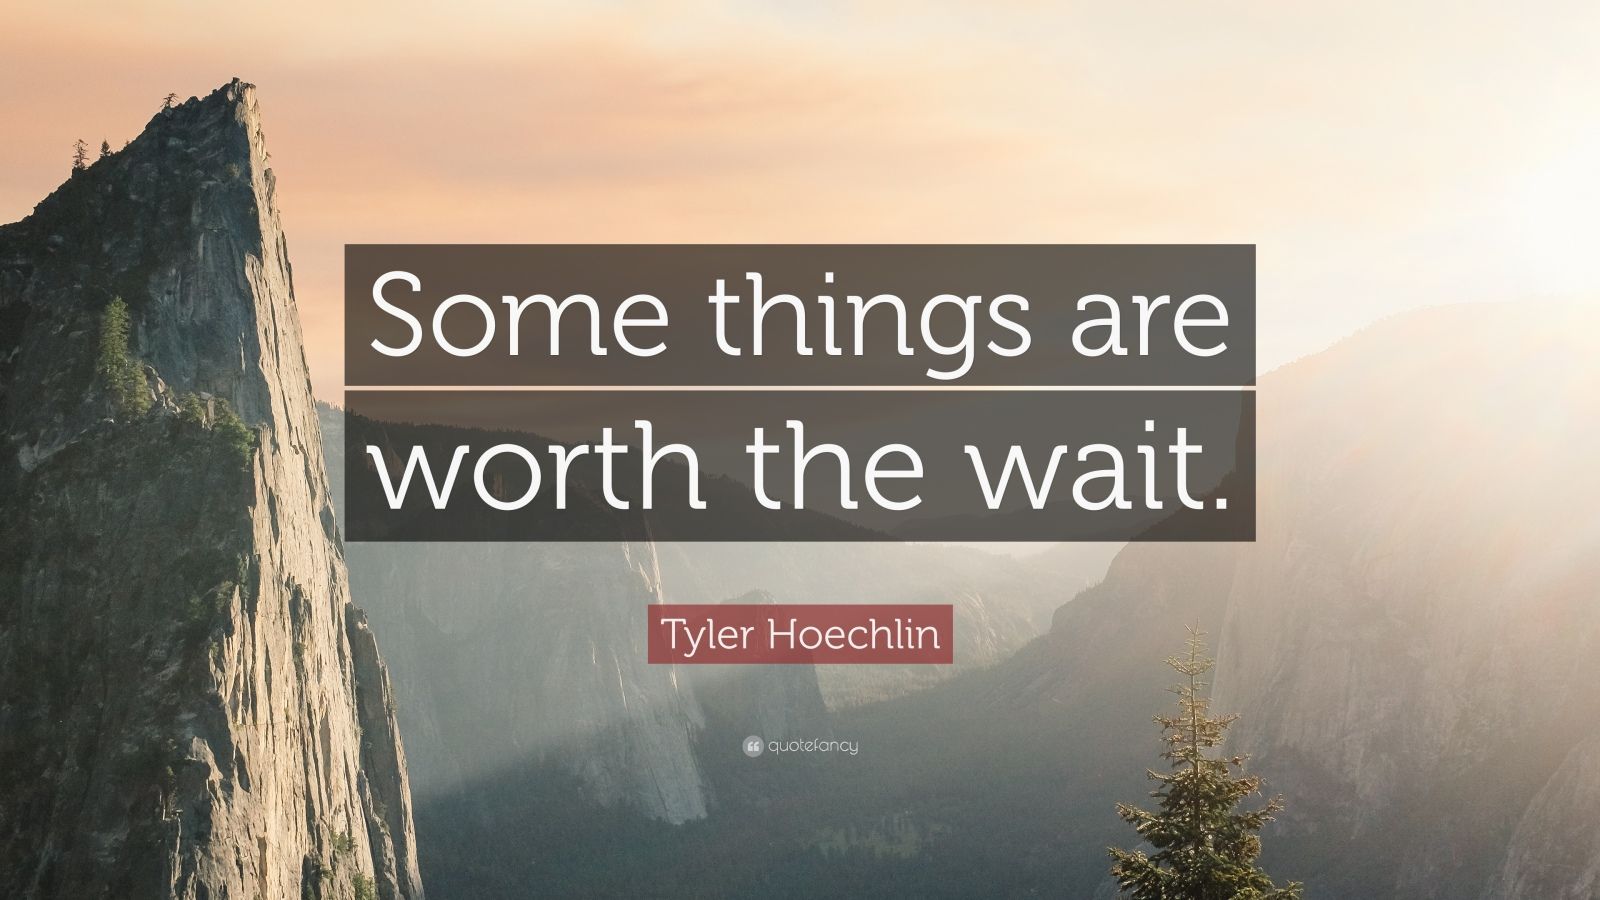 Top 7 Tyler Hoechlin Quotes (2021 Update) - Quotefancy